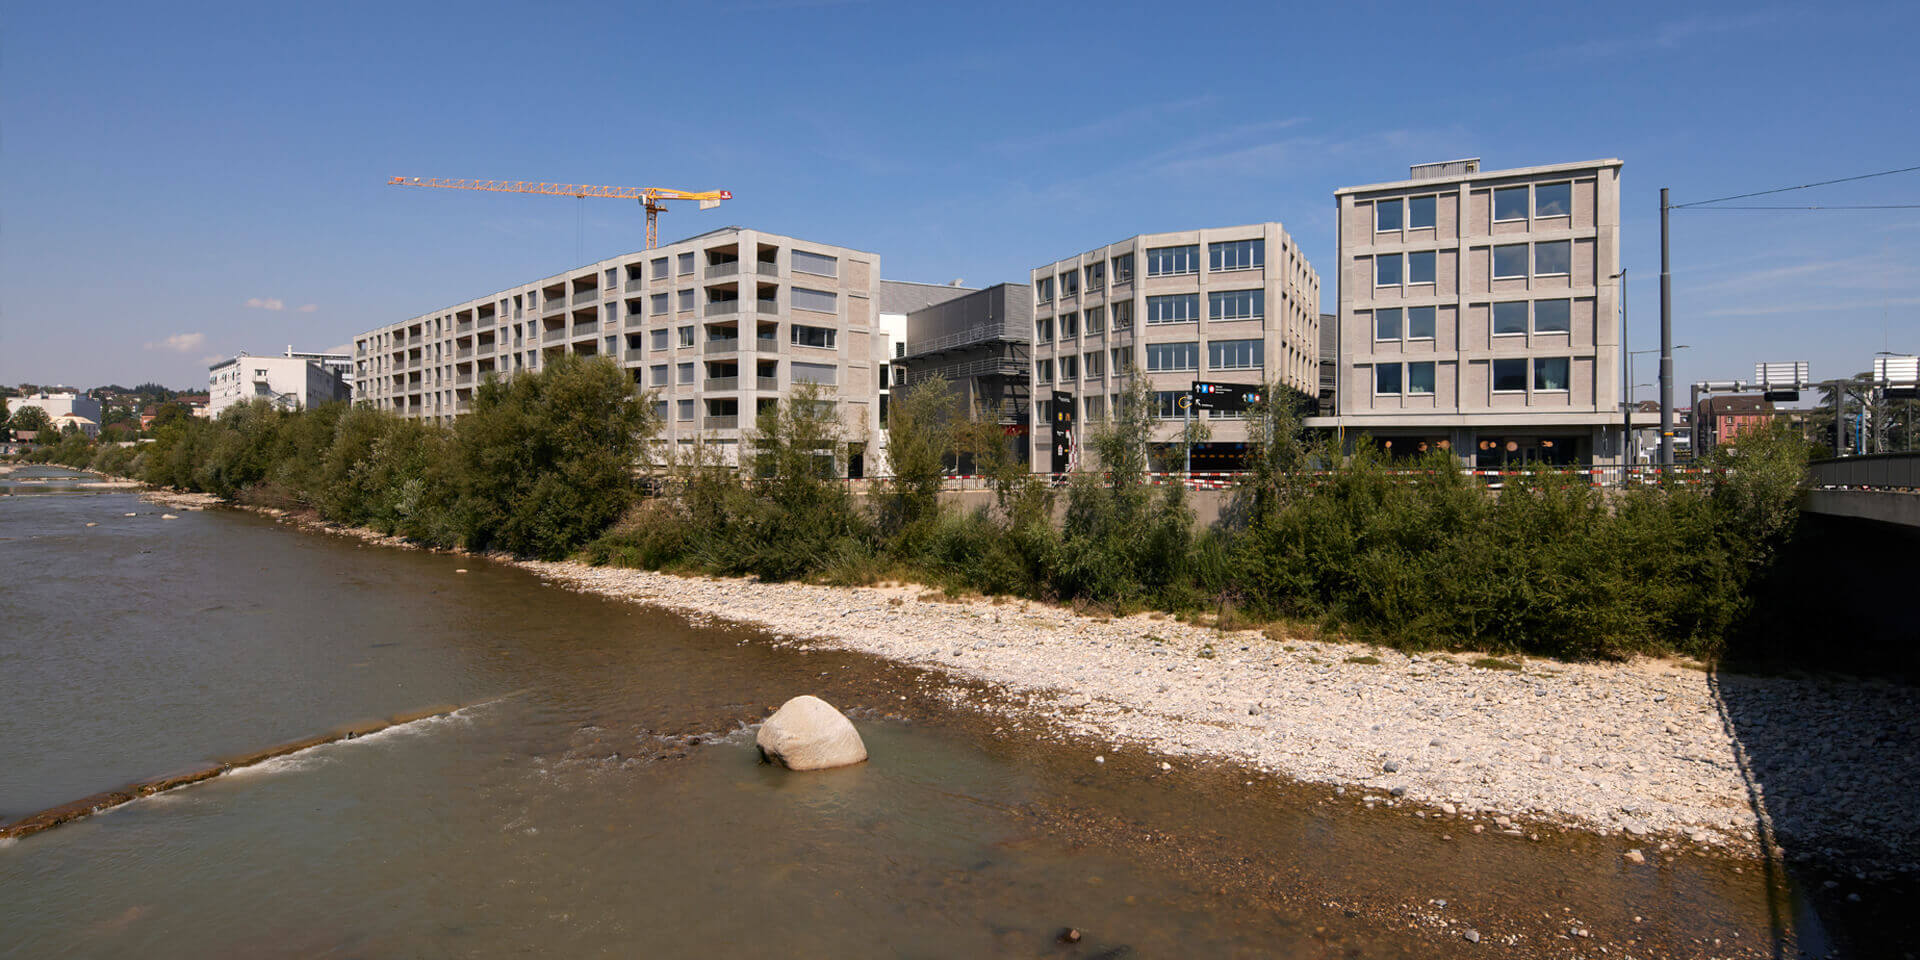 Hier leben und arbeiten die Menschen in einem modernen, ökologischen und lebhaften Zentrum am Fluss. Um dieses Zielbild zu erreichen, soll sich Luzern Nord als Smart City entwickeln.